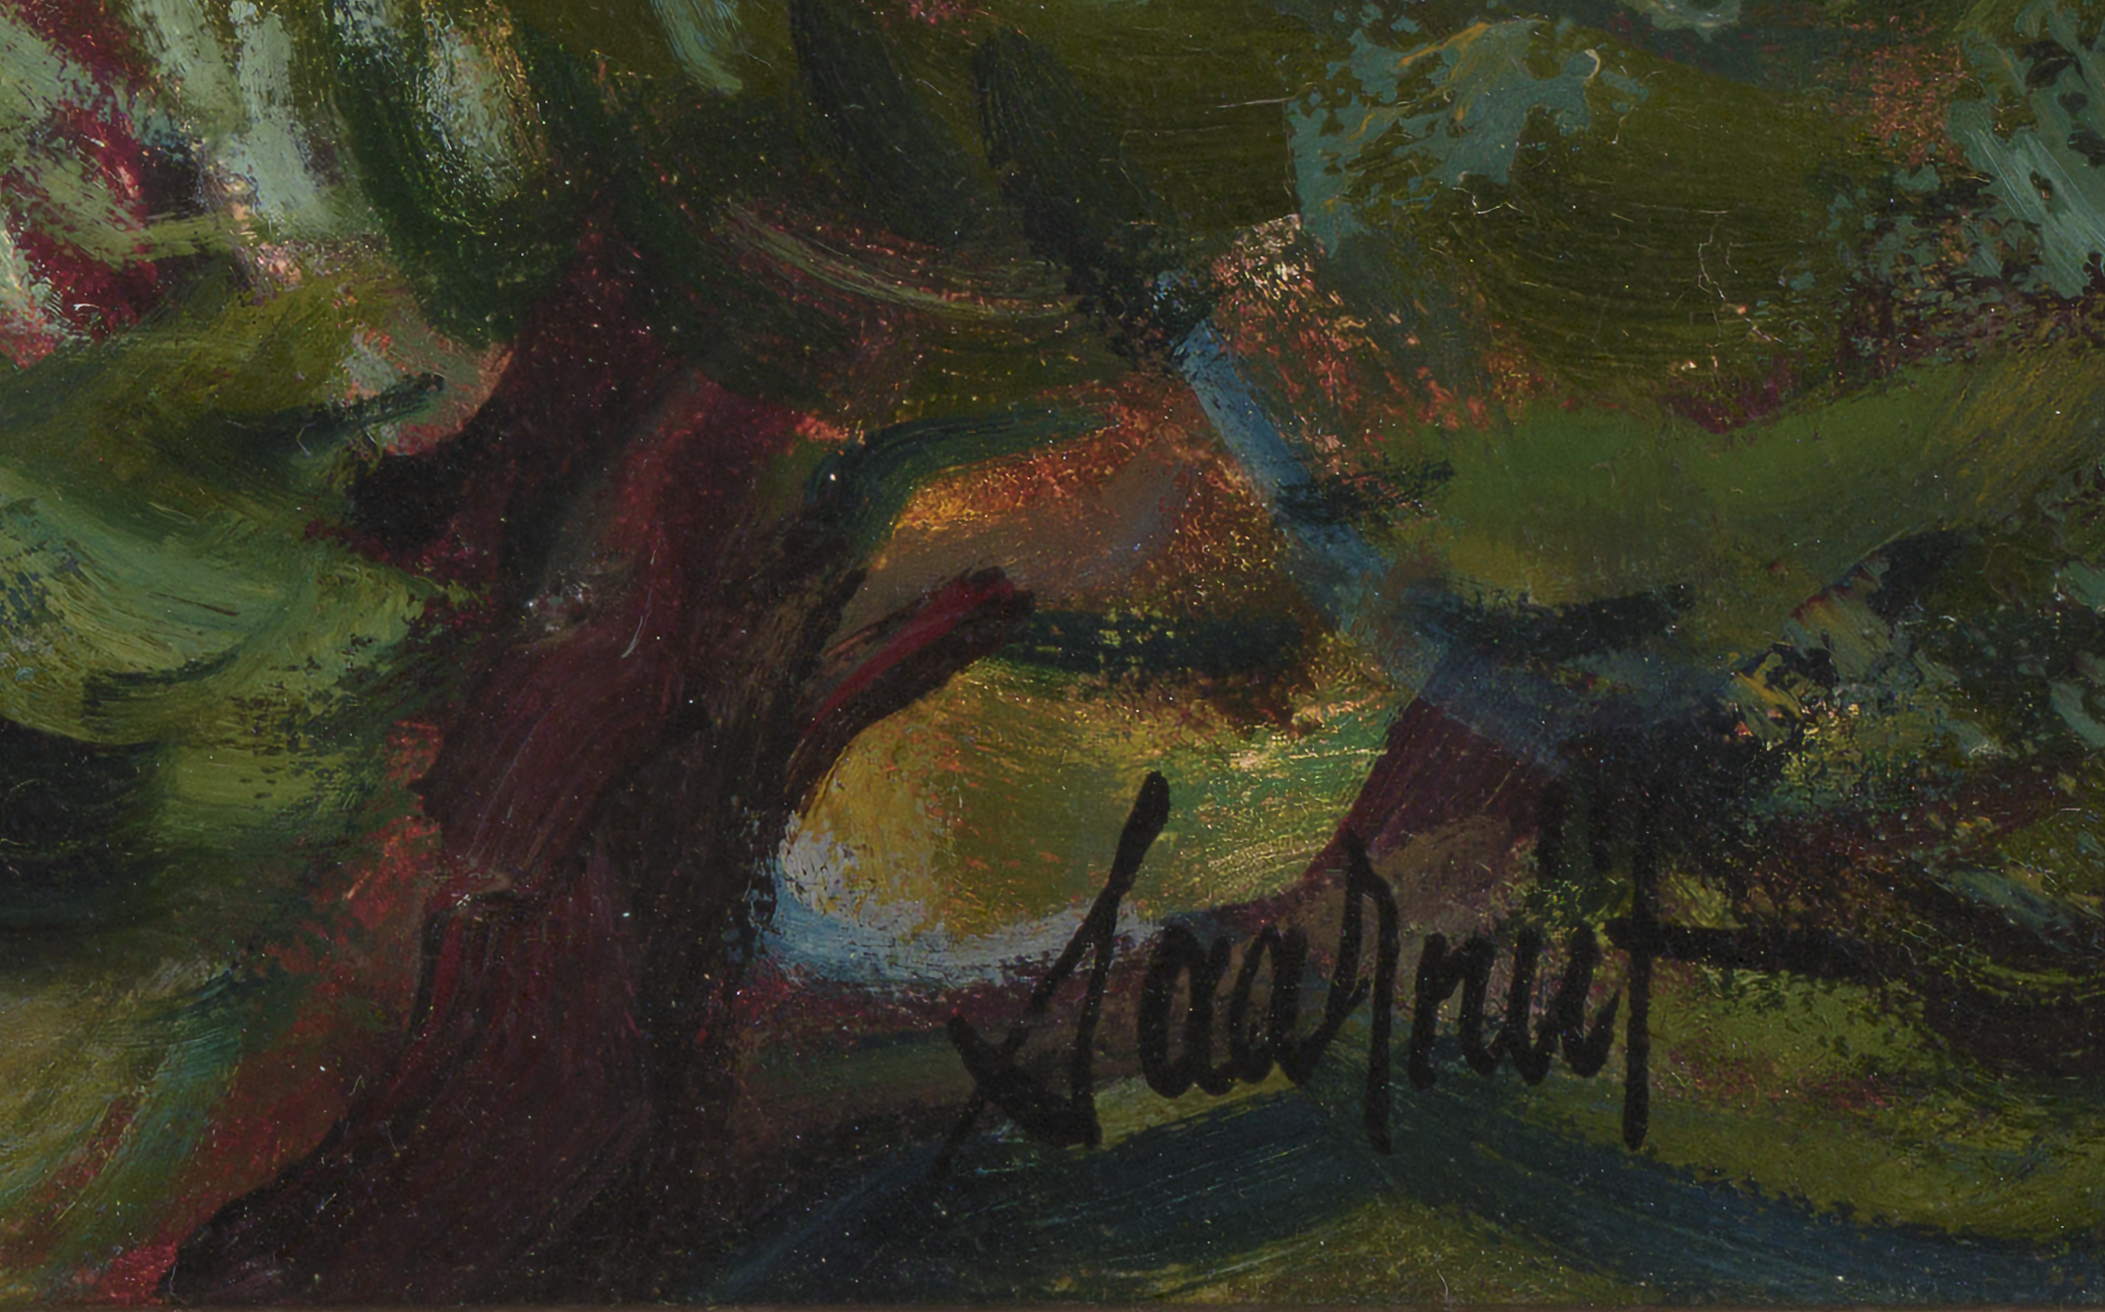 Joann Saarniit “Tormine Sõrve”, 1981. 51 x 65,5 cm.